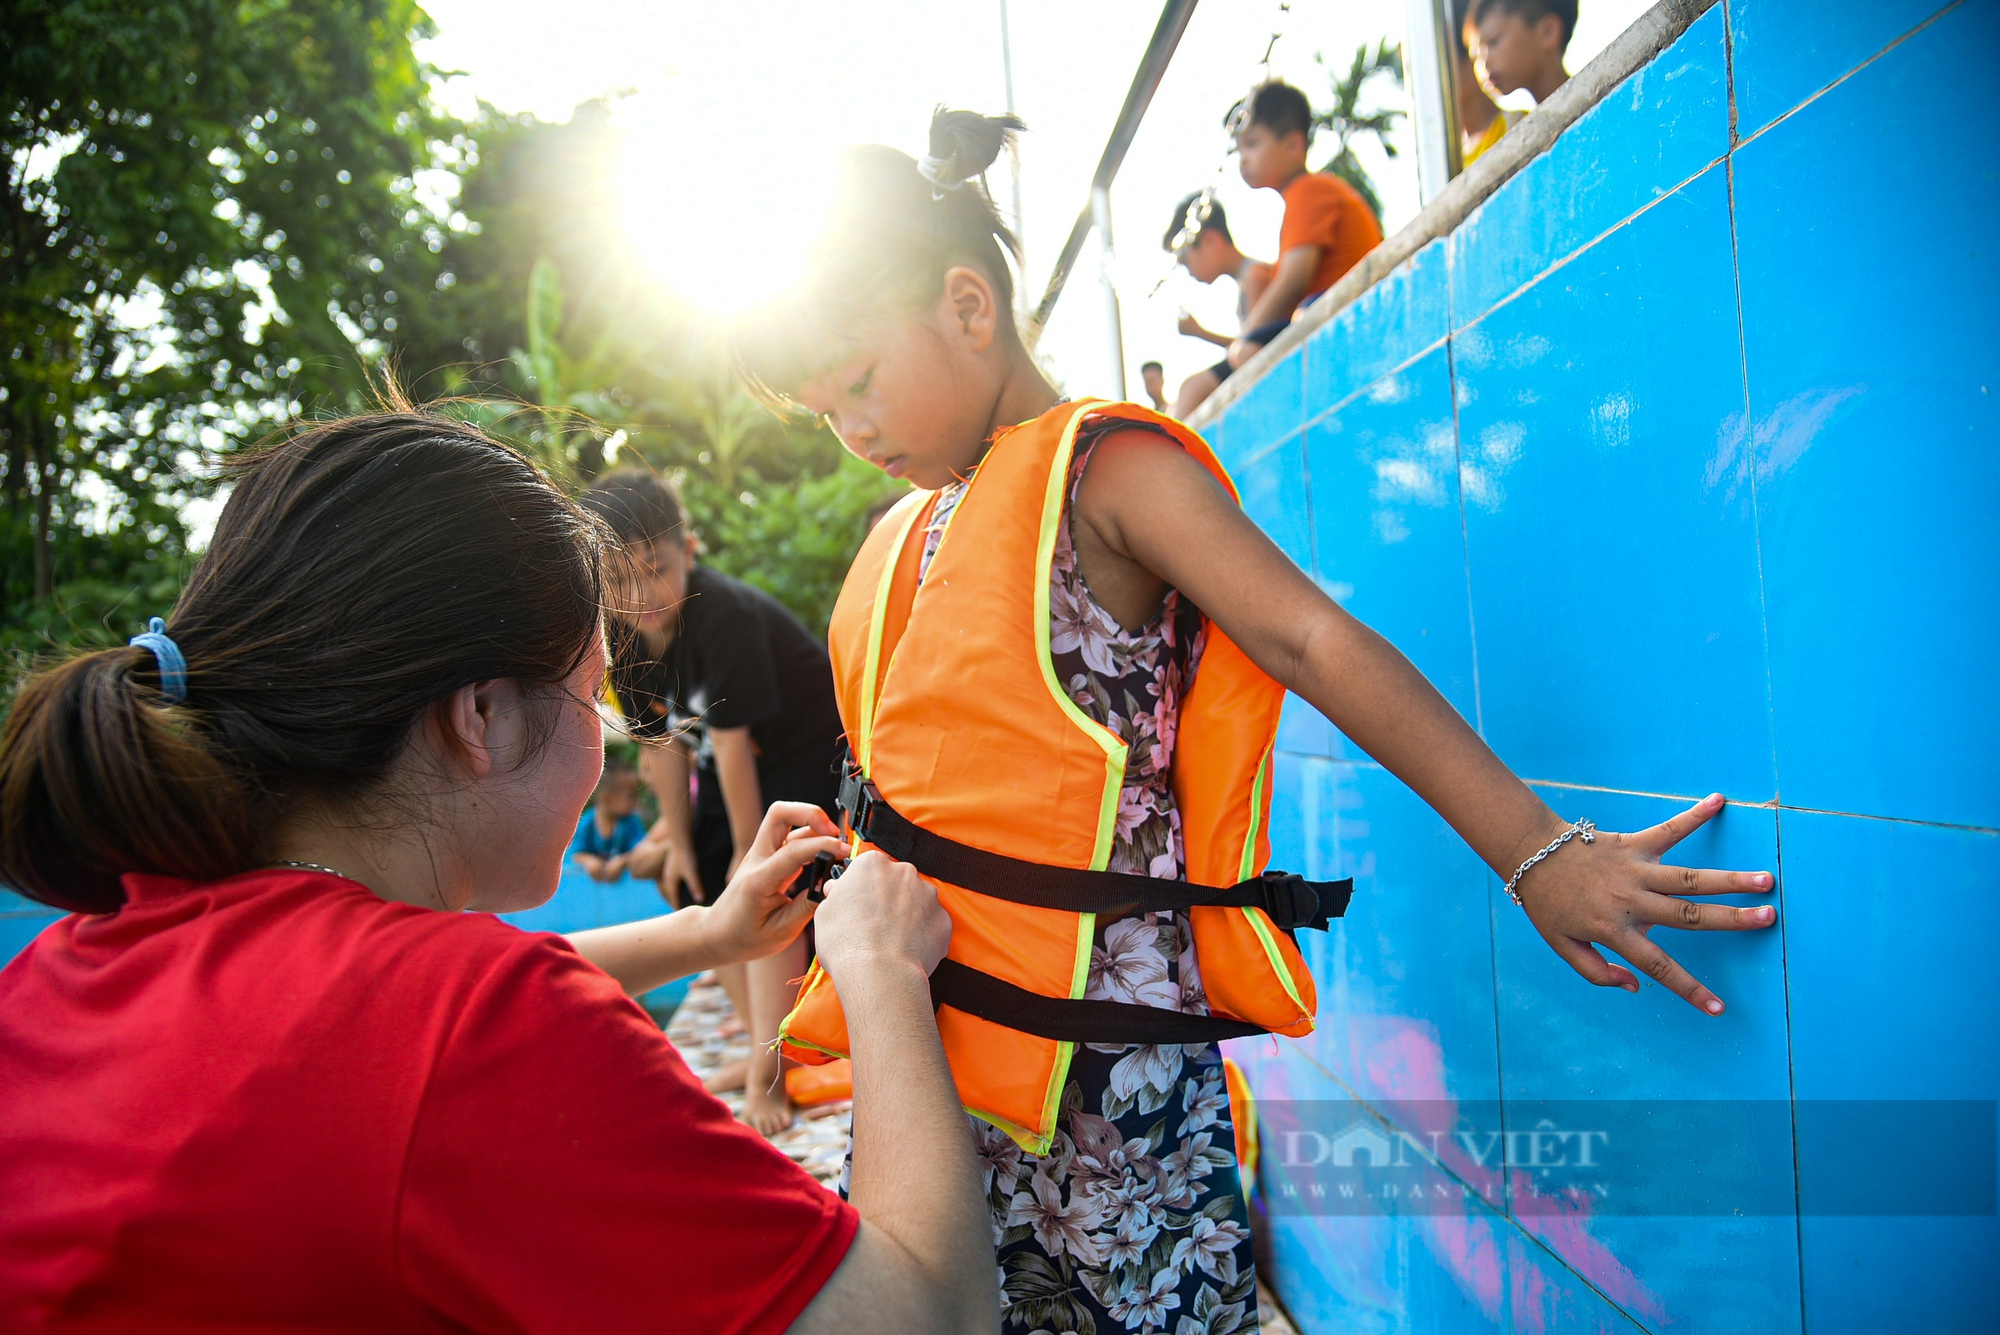 Biến ao làng thành bể bơi miễn phí, trẻ em thích thú tắm giải nhiệt ngày nắng nóng - Ảnh 11.